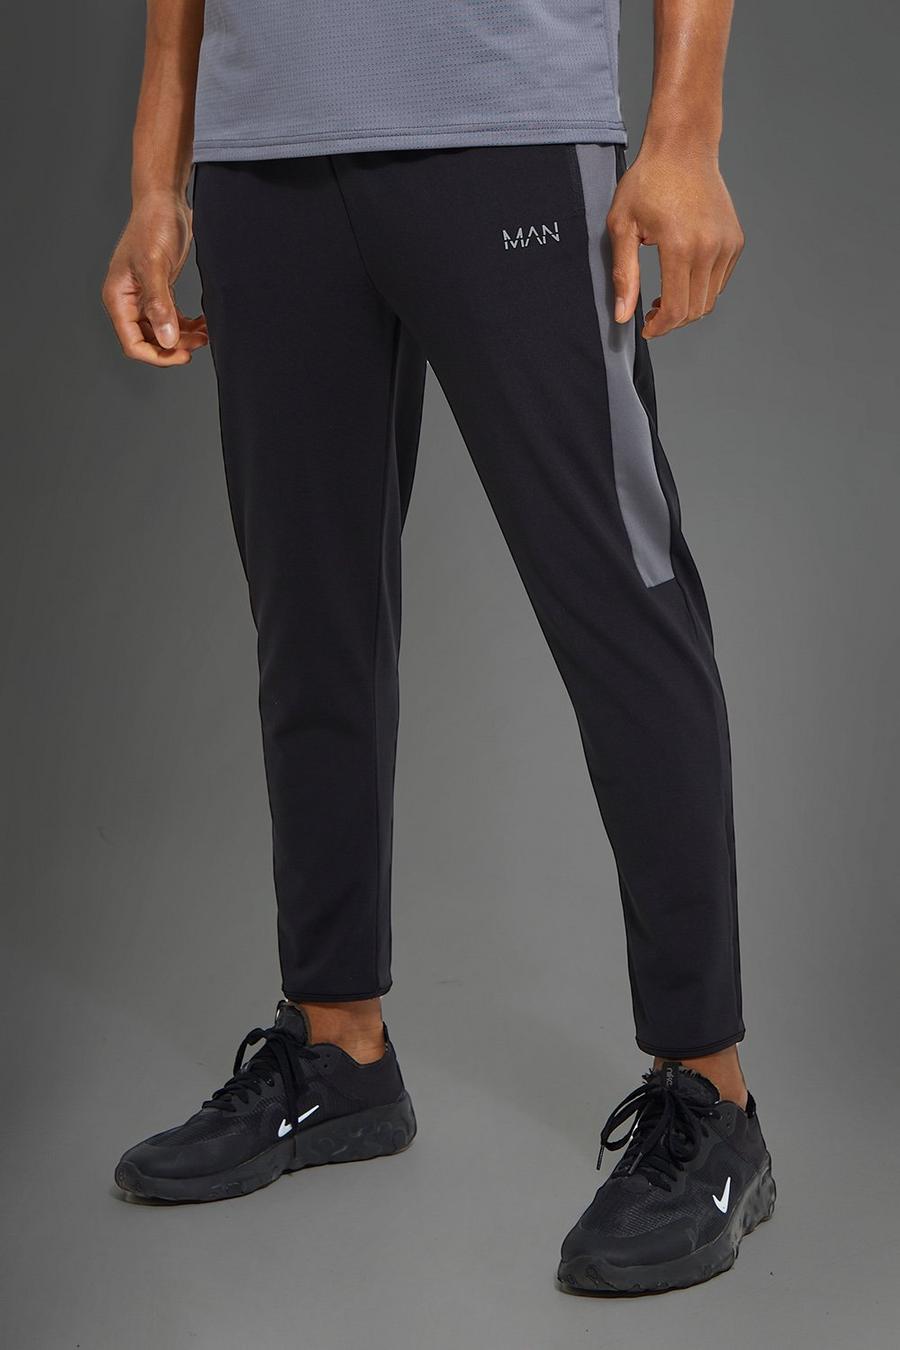 Pantaloni tuta alla caviglia Man Active con pannelli laterali, Black negro